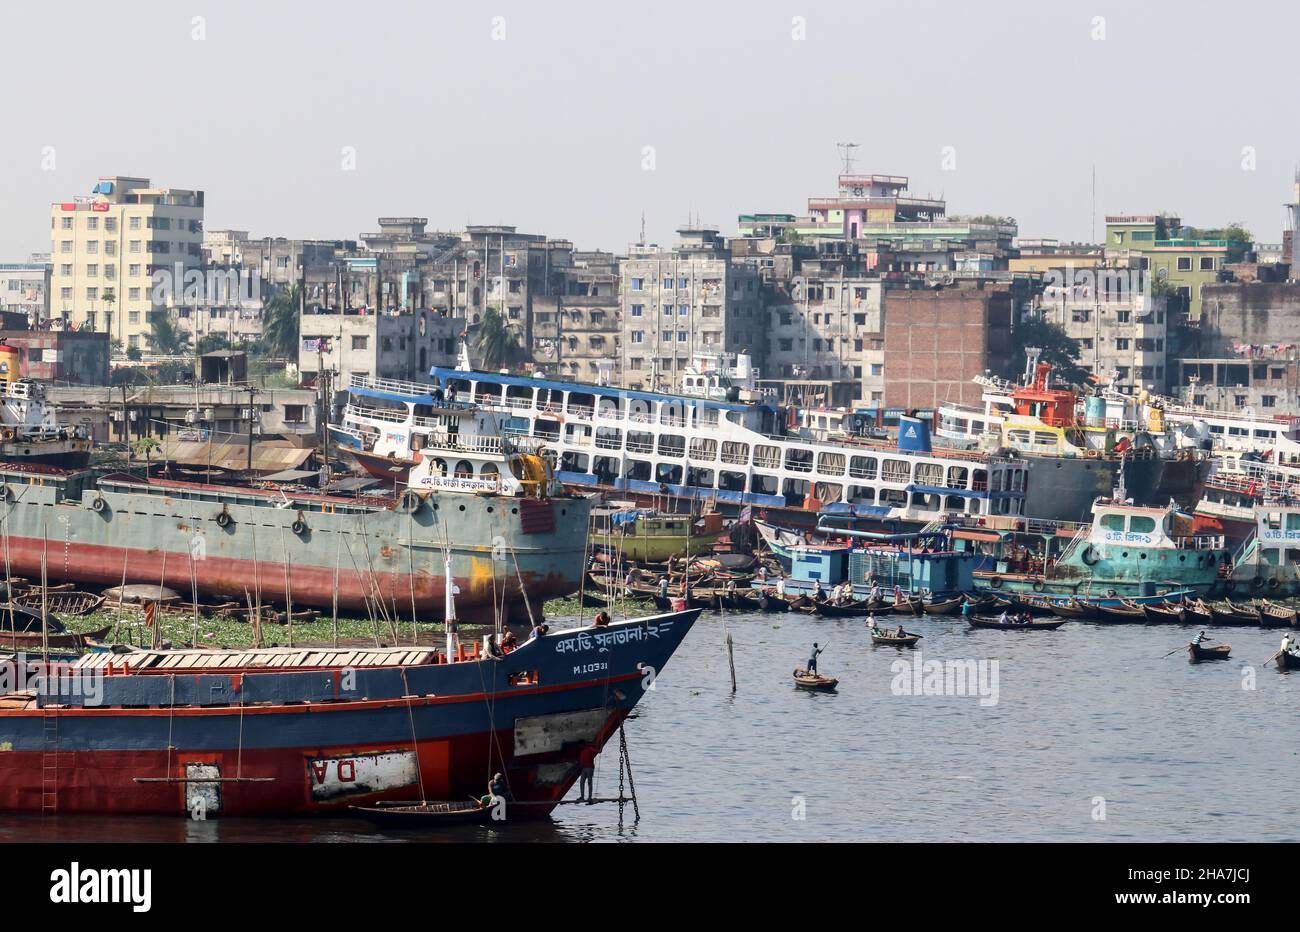 Dhaka, Bangladesh : le fleuve Buriganga coule à côté de Dhaka.Les chantiers maritimes le long de la rivière sont occupés à la construction navale et à la réparation tout au long de l'année Banque D'Images